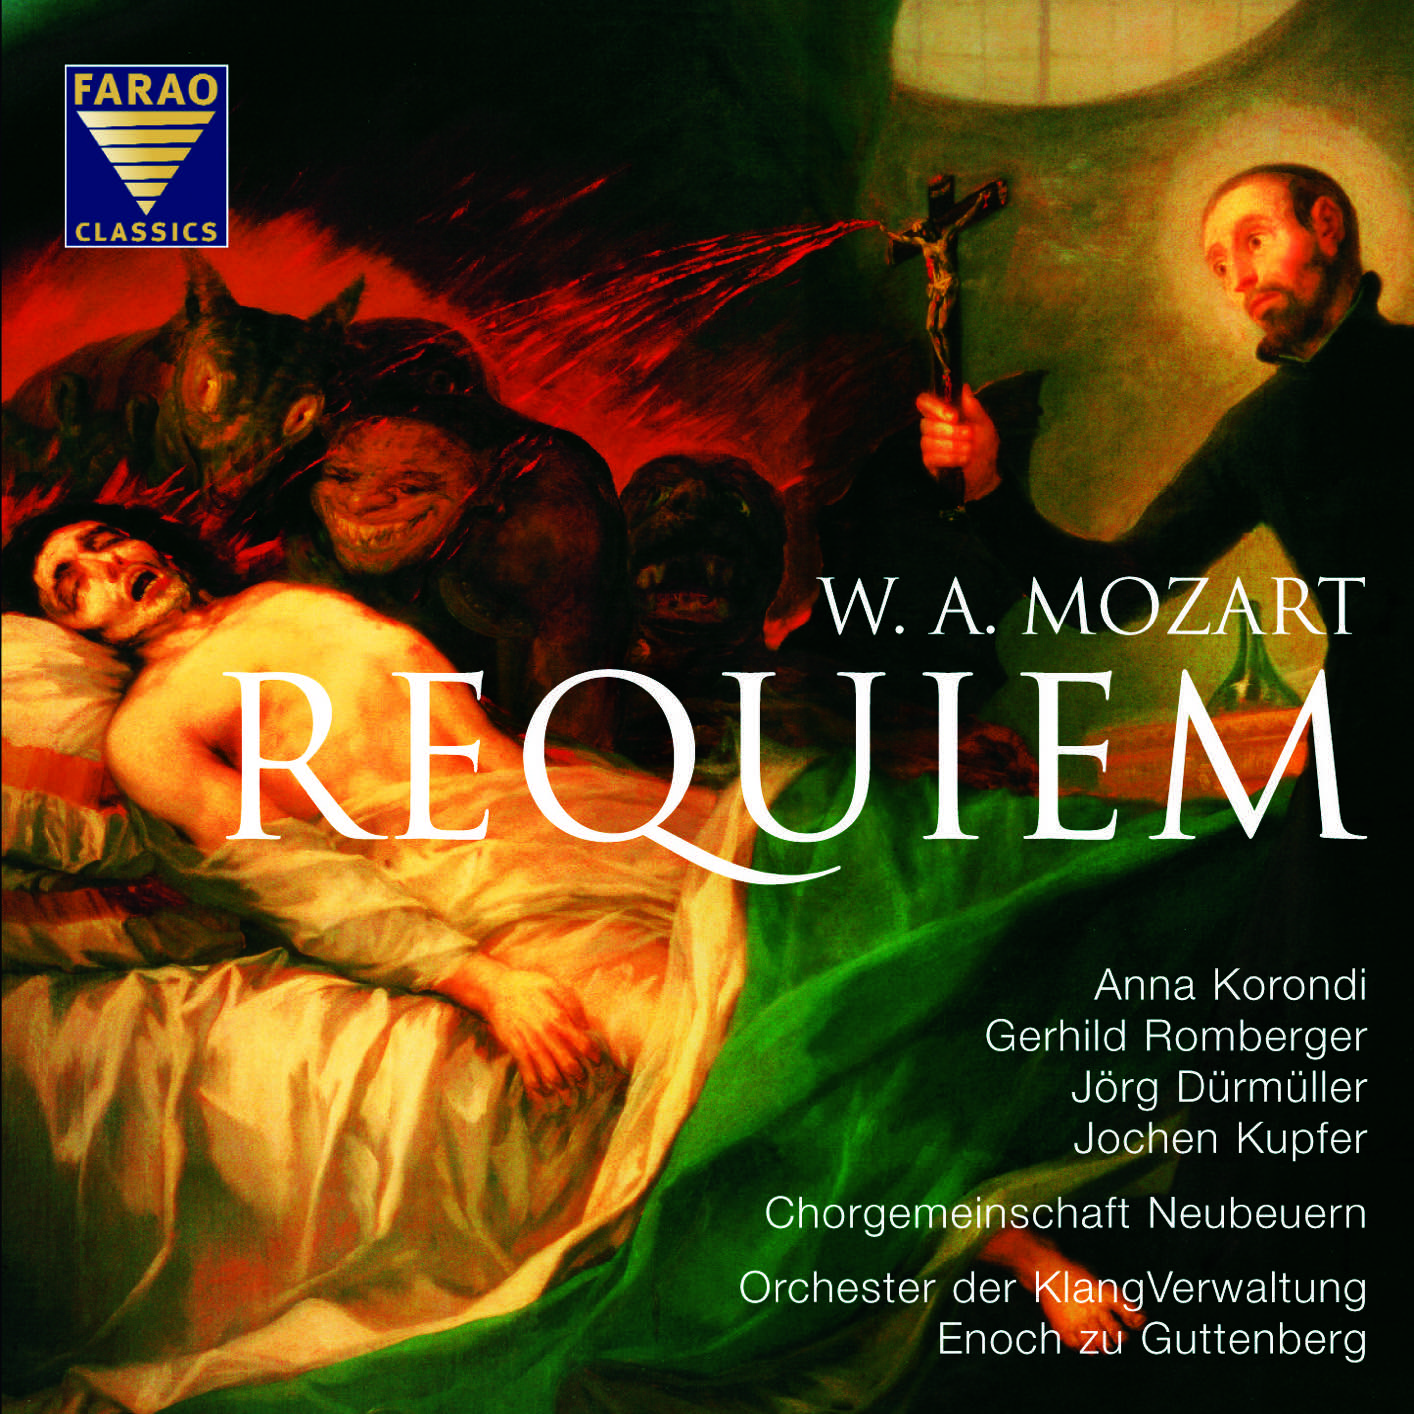 Mozart's Requiem In D Minor. K.626 – Artes & Contextos